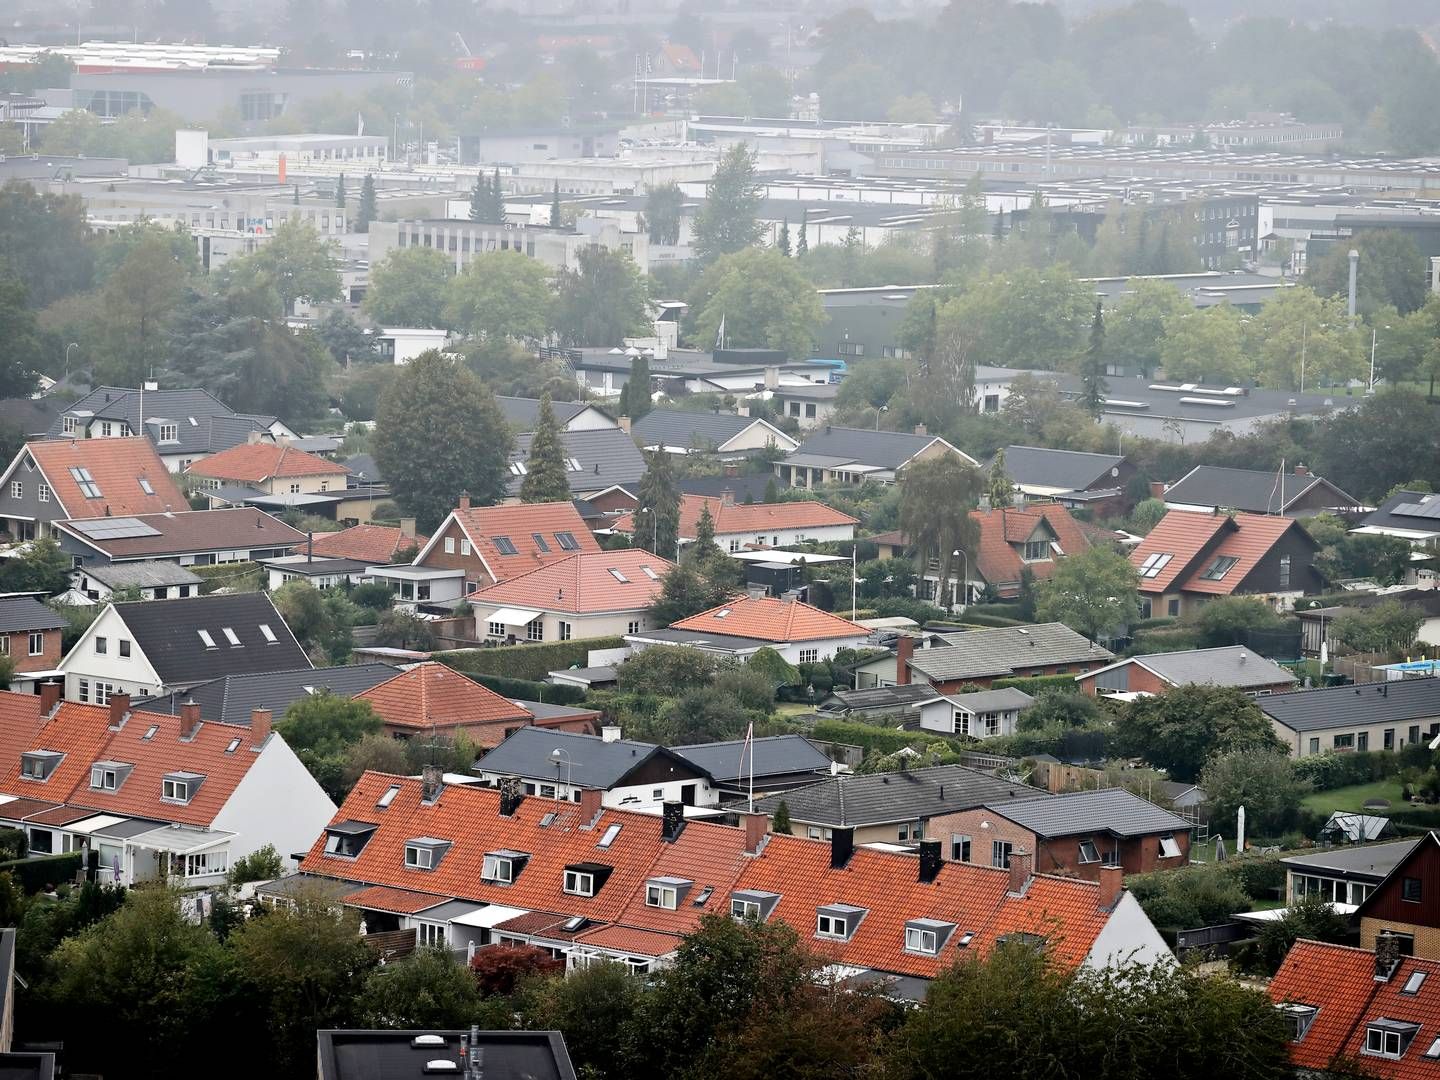 Boliger står stadig for størstedelen af landets ejendomshandler, men en særlig type erhvervsejendomme oplever fremgang. | Foto: Jens Dresling